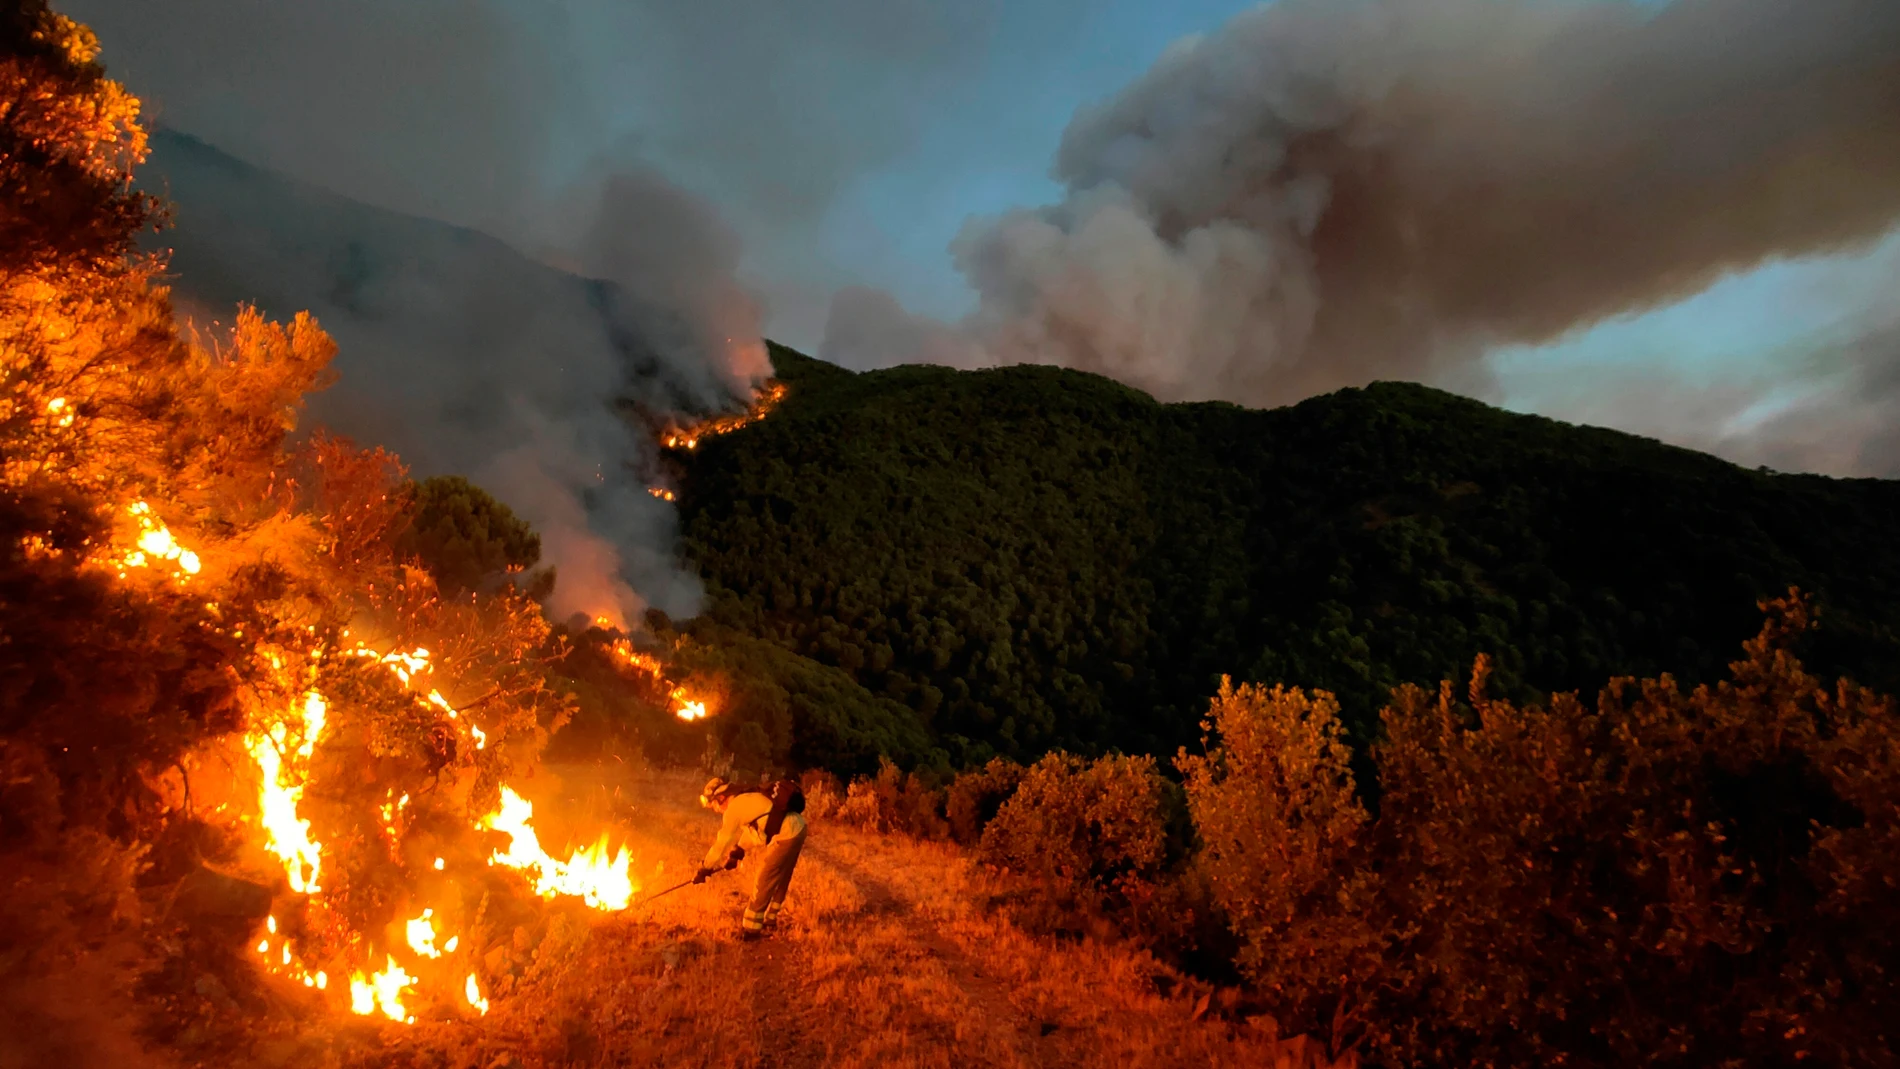 Las llamas calcinaron parte del parque natural de Sierra Bermeja (Málaga) y un bombero murió durante las labores de extinción